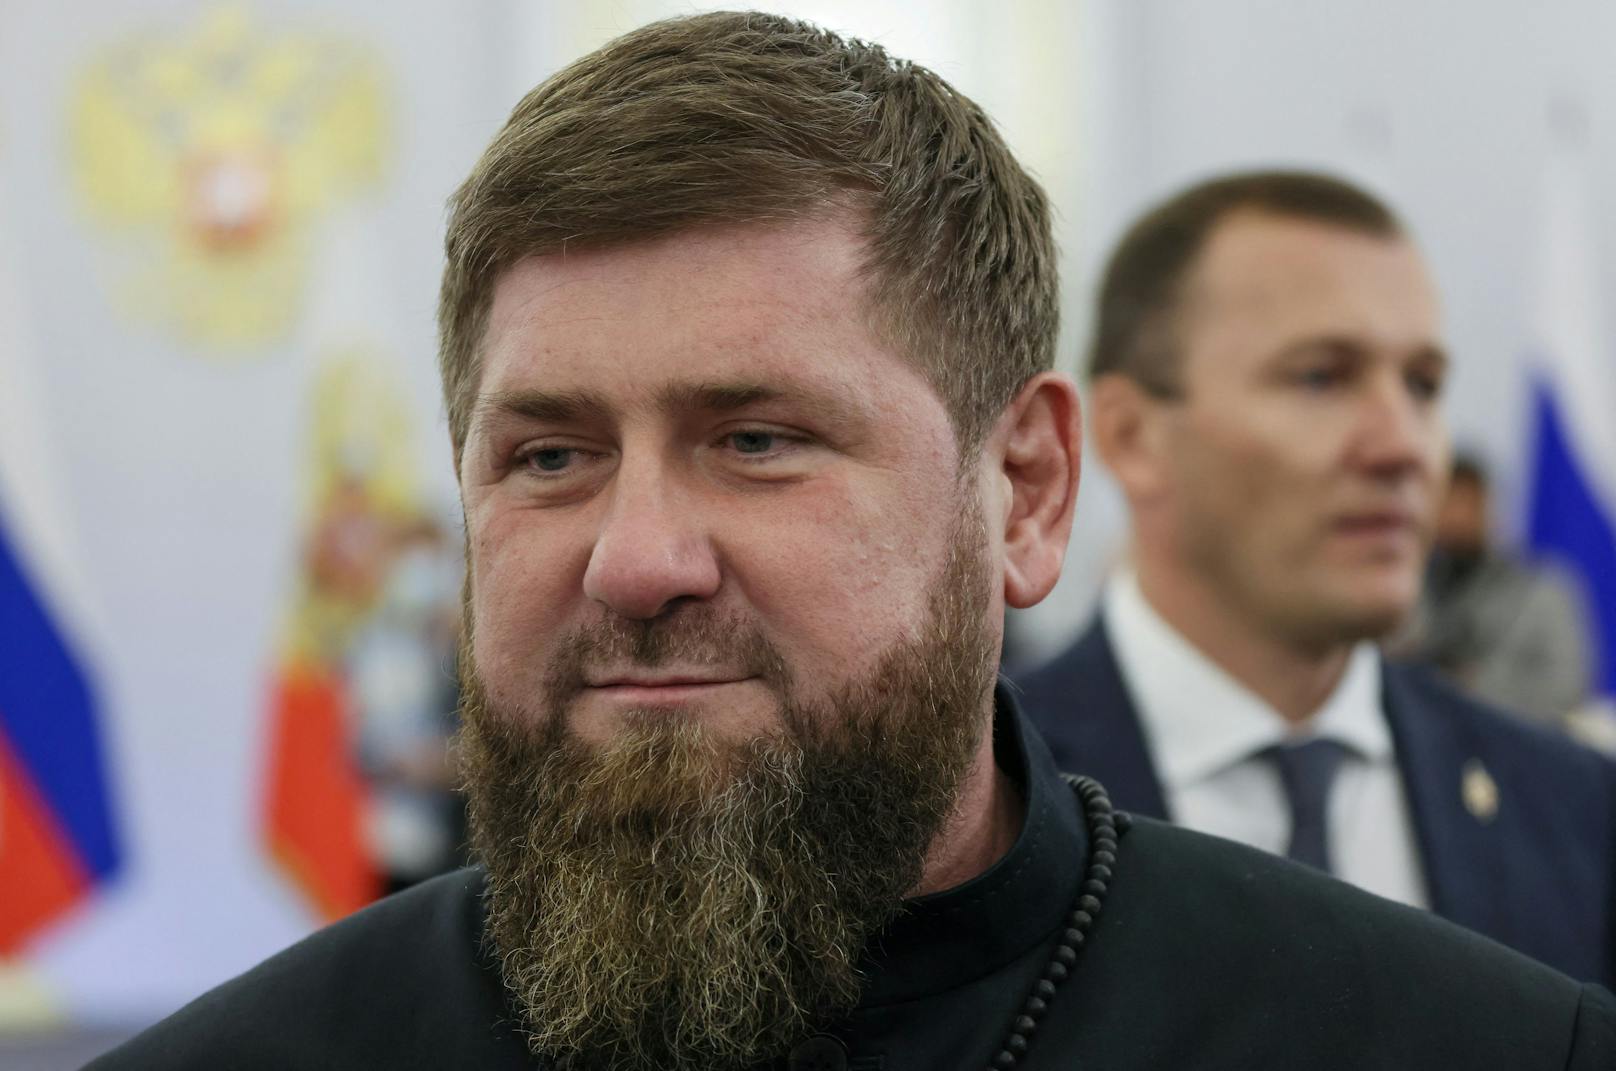 Kadyrow-Kämpfer ernten im Netz Spott und Häme